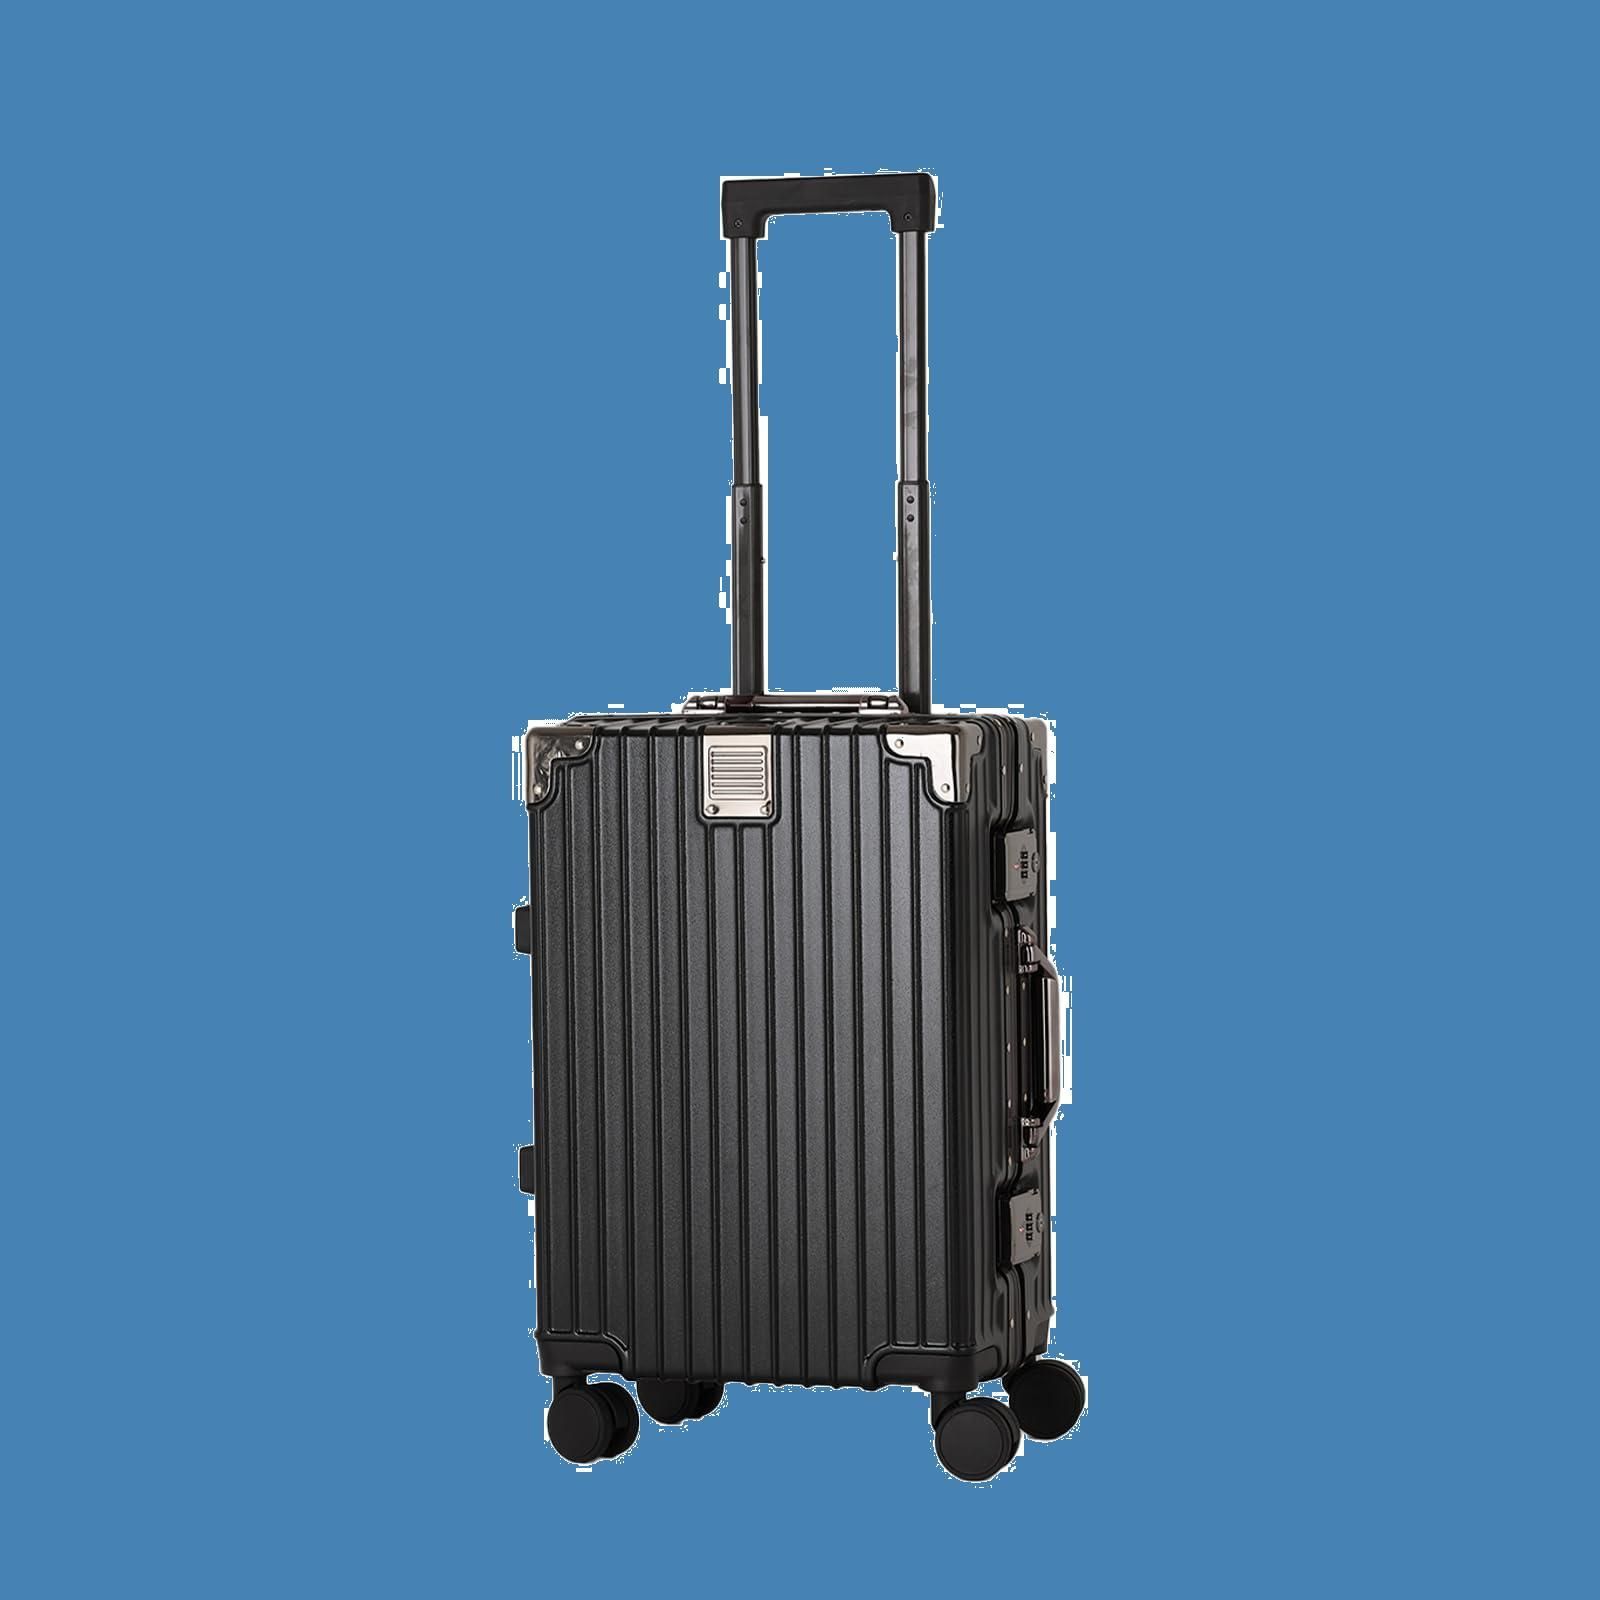 fofo] スーツケース キャリーケース 機内持ち込み 大型 旅行 (Sサイズ